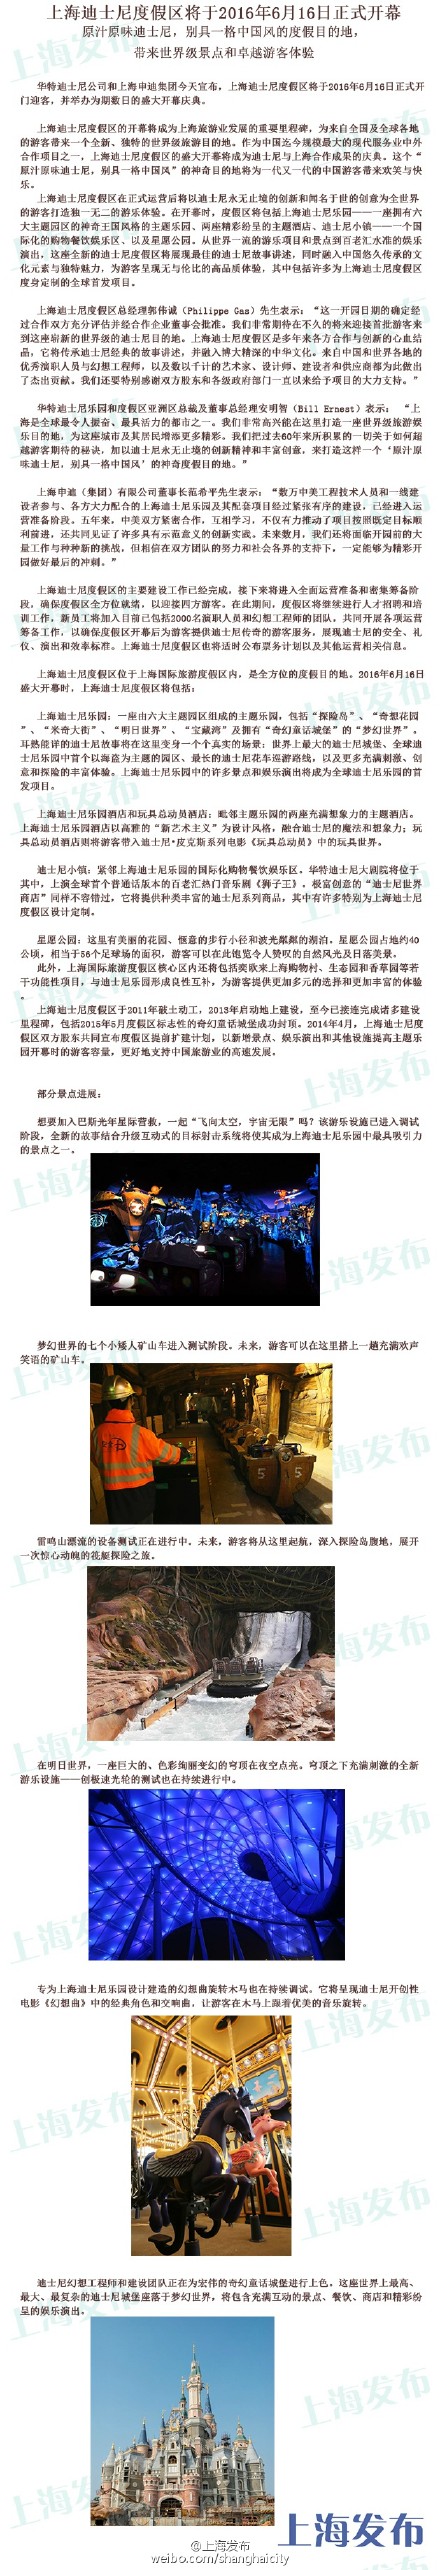 上海迪士尼6月16日正式开园 最新进展图曝光